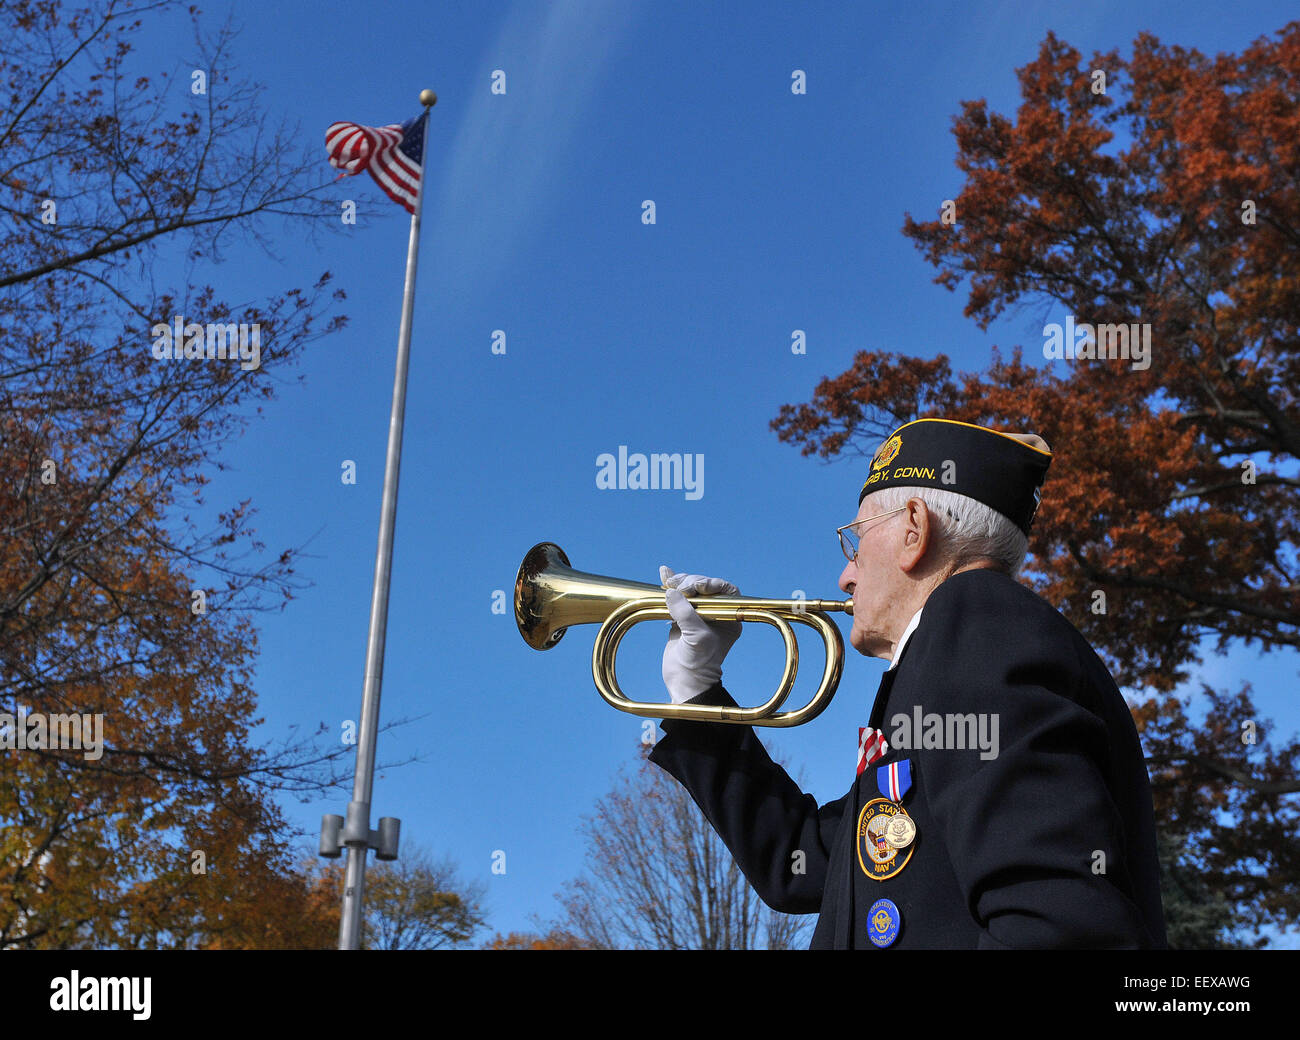 Dresdenener Marine Veteran, Daniel R. Waleski, 89, spielt"" Hähne während der jährlichen Veteran Einhaltung Zeremonie auf dem Derby grün, CT USA. Stockfoto